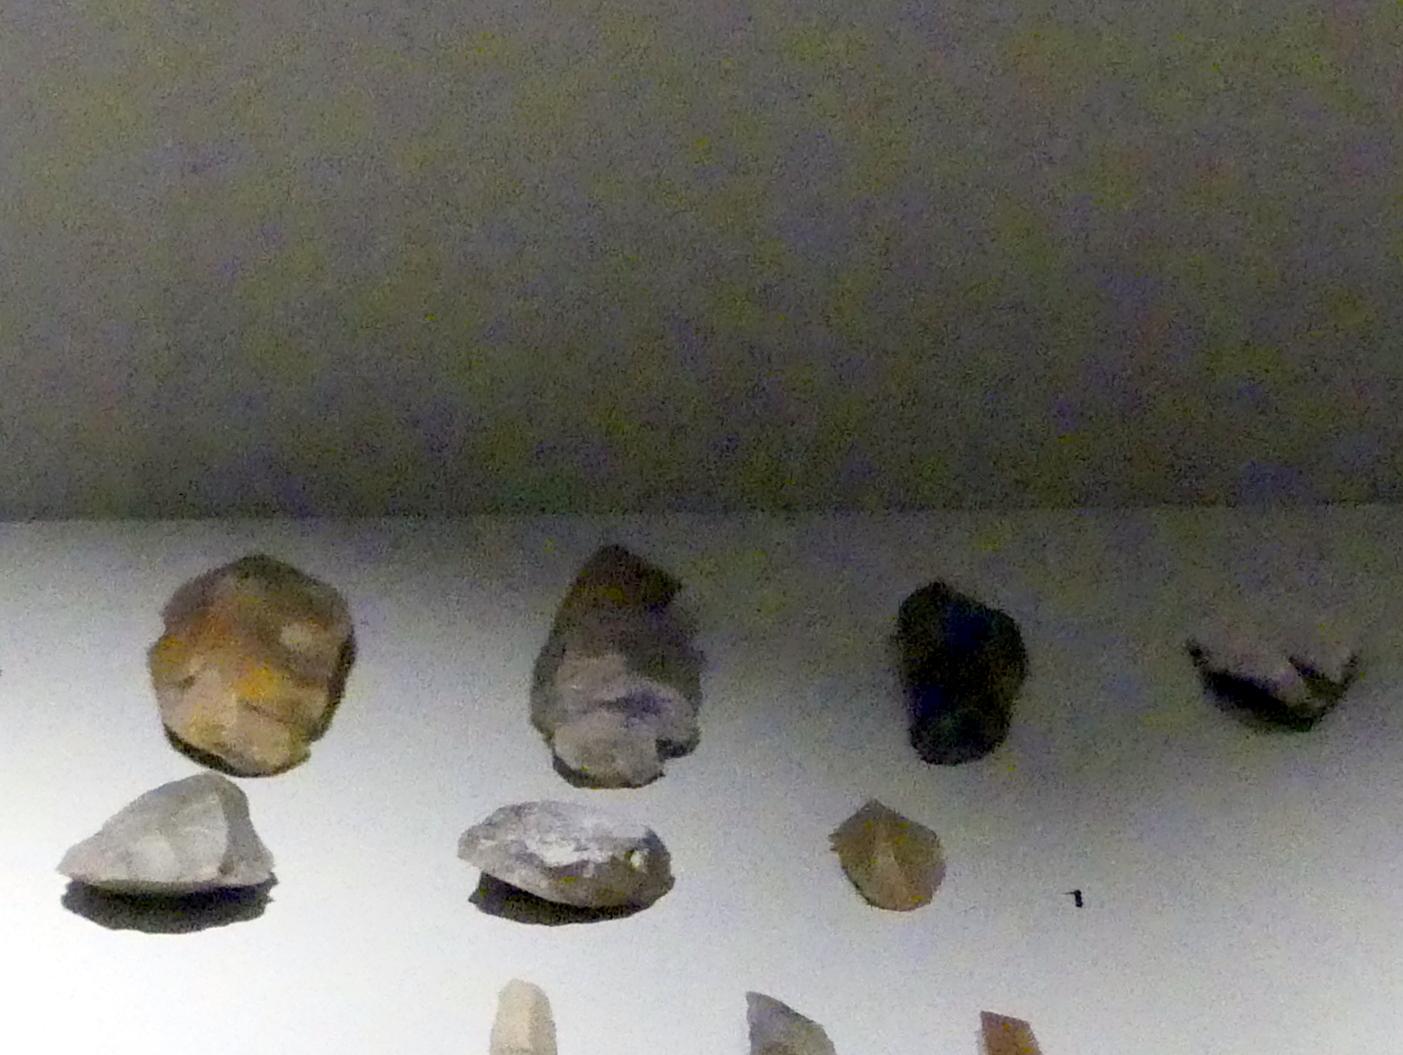 Kratzer, Mesolithikum, 9500 - 5500 v. Chr., Spätpaläolithikum, 13000 - 10000 v. Chr., 9500 v. Chr., Bild 1/3